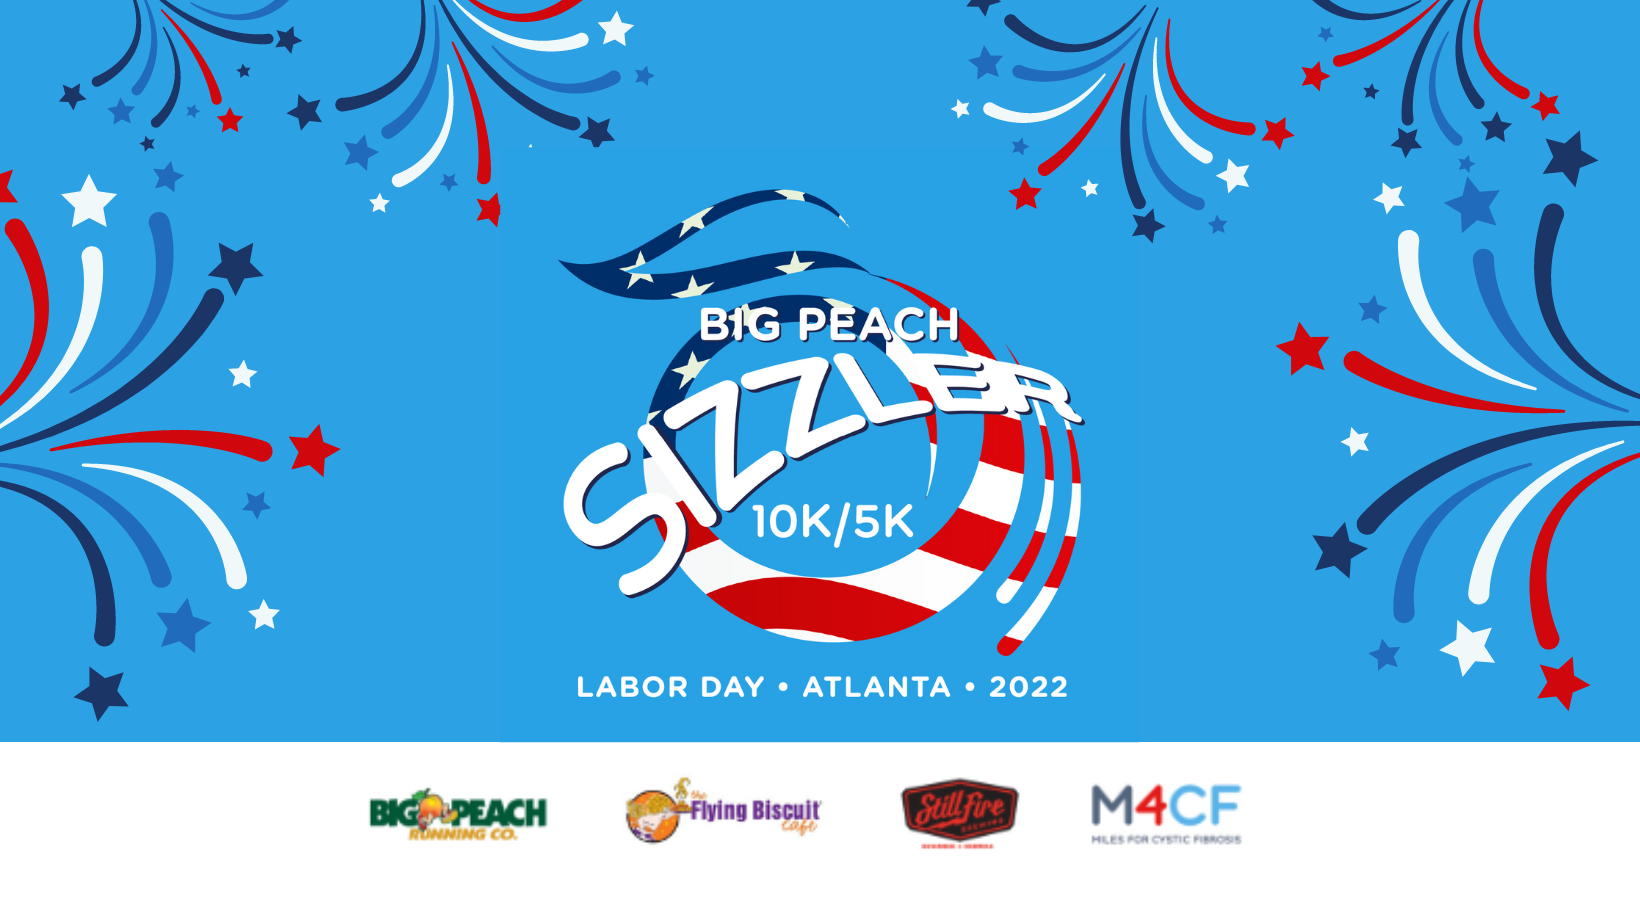 Big Peach Sizzler 10K & 5K Returns Labor Day Weekend!